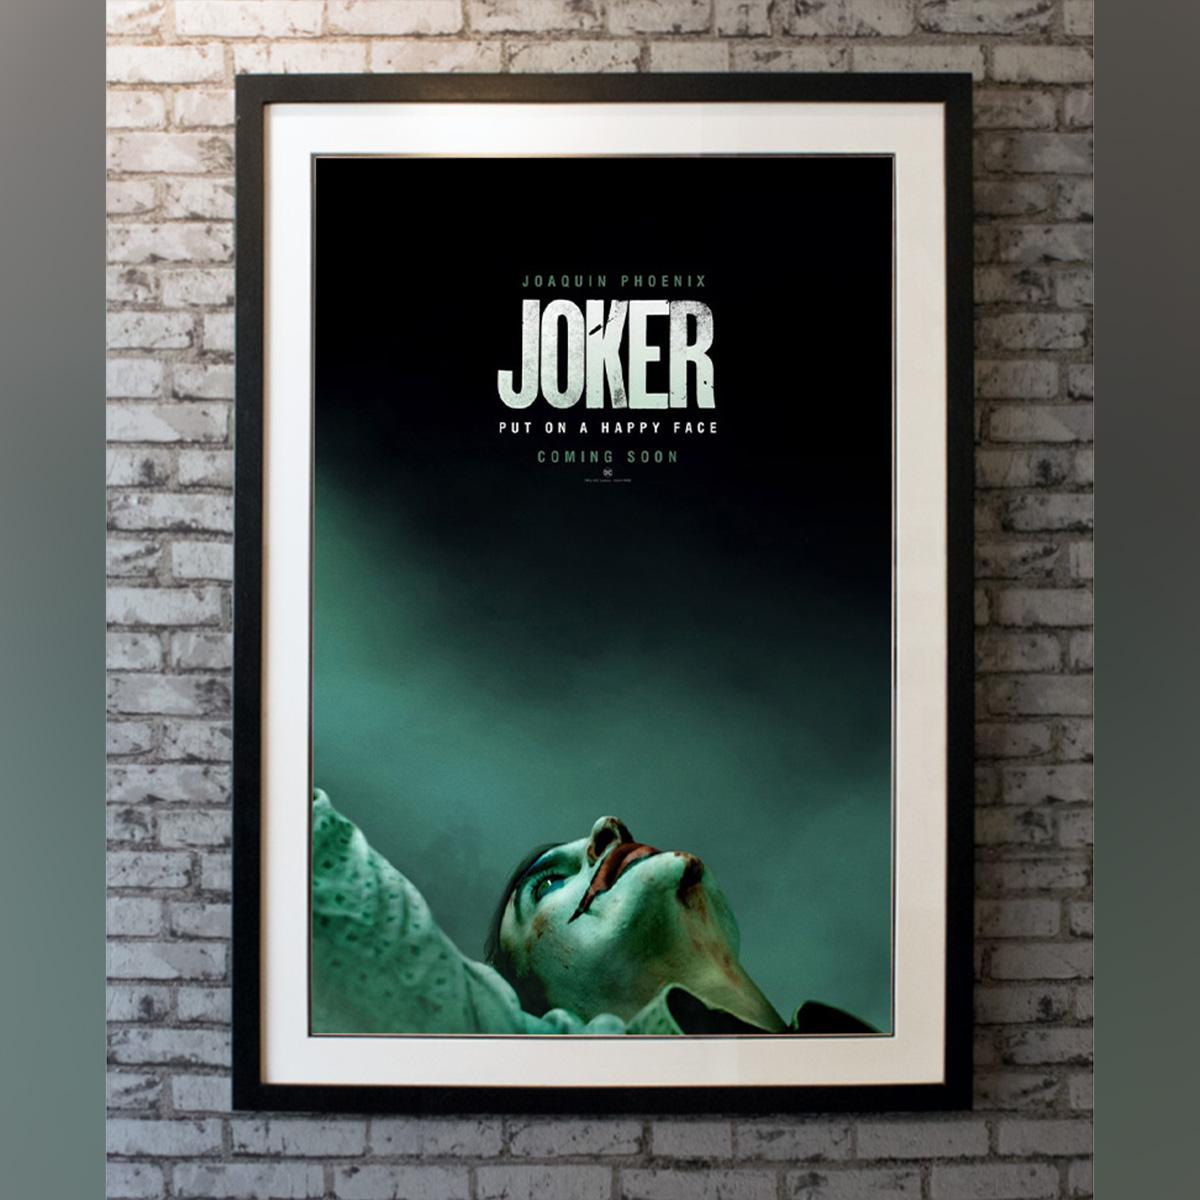 joker poster 2019